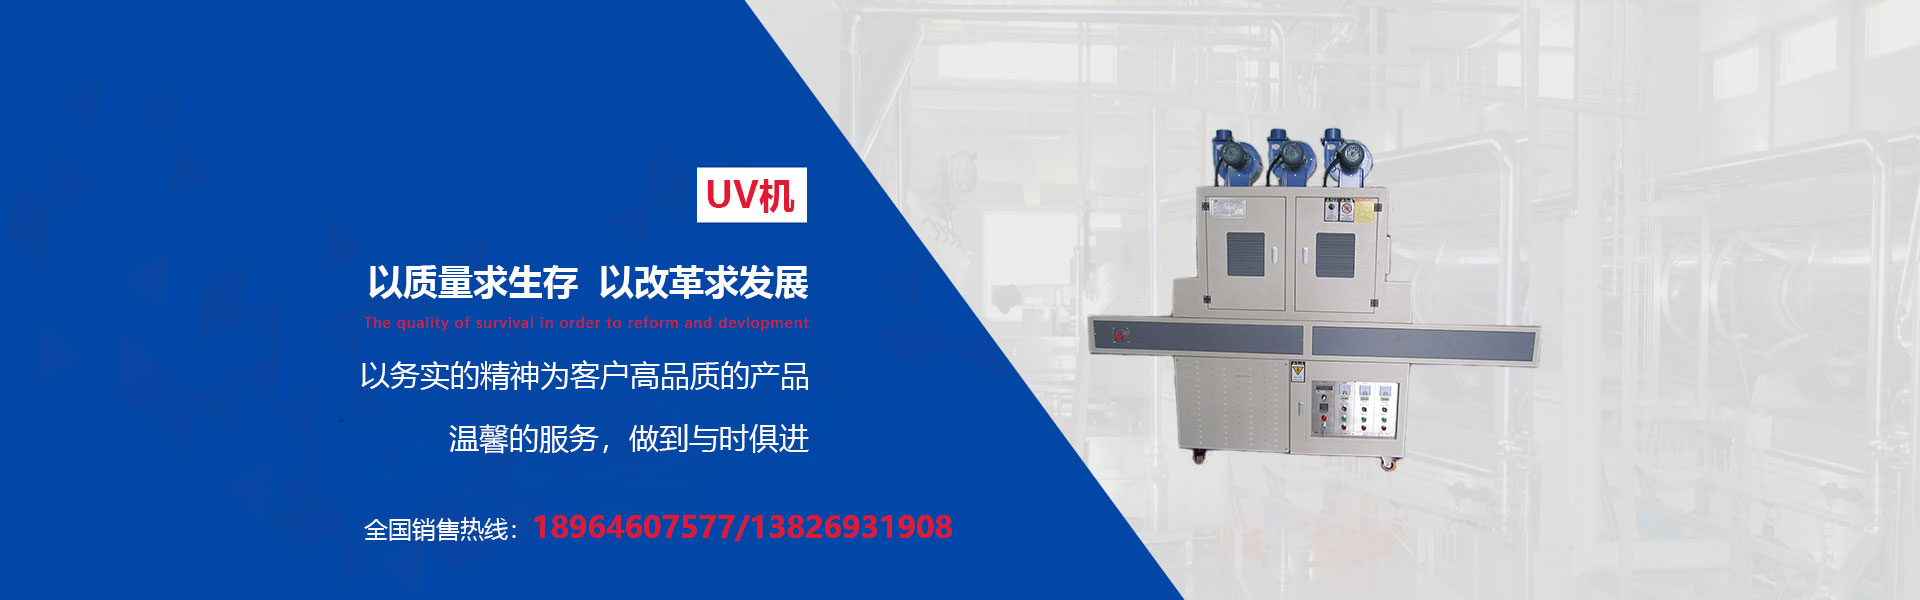 上海UV机系列